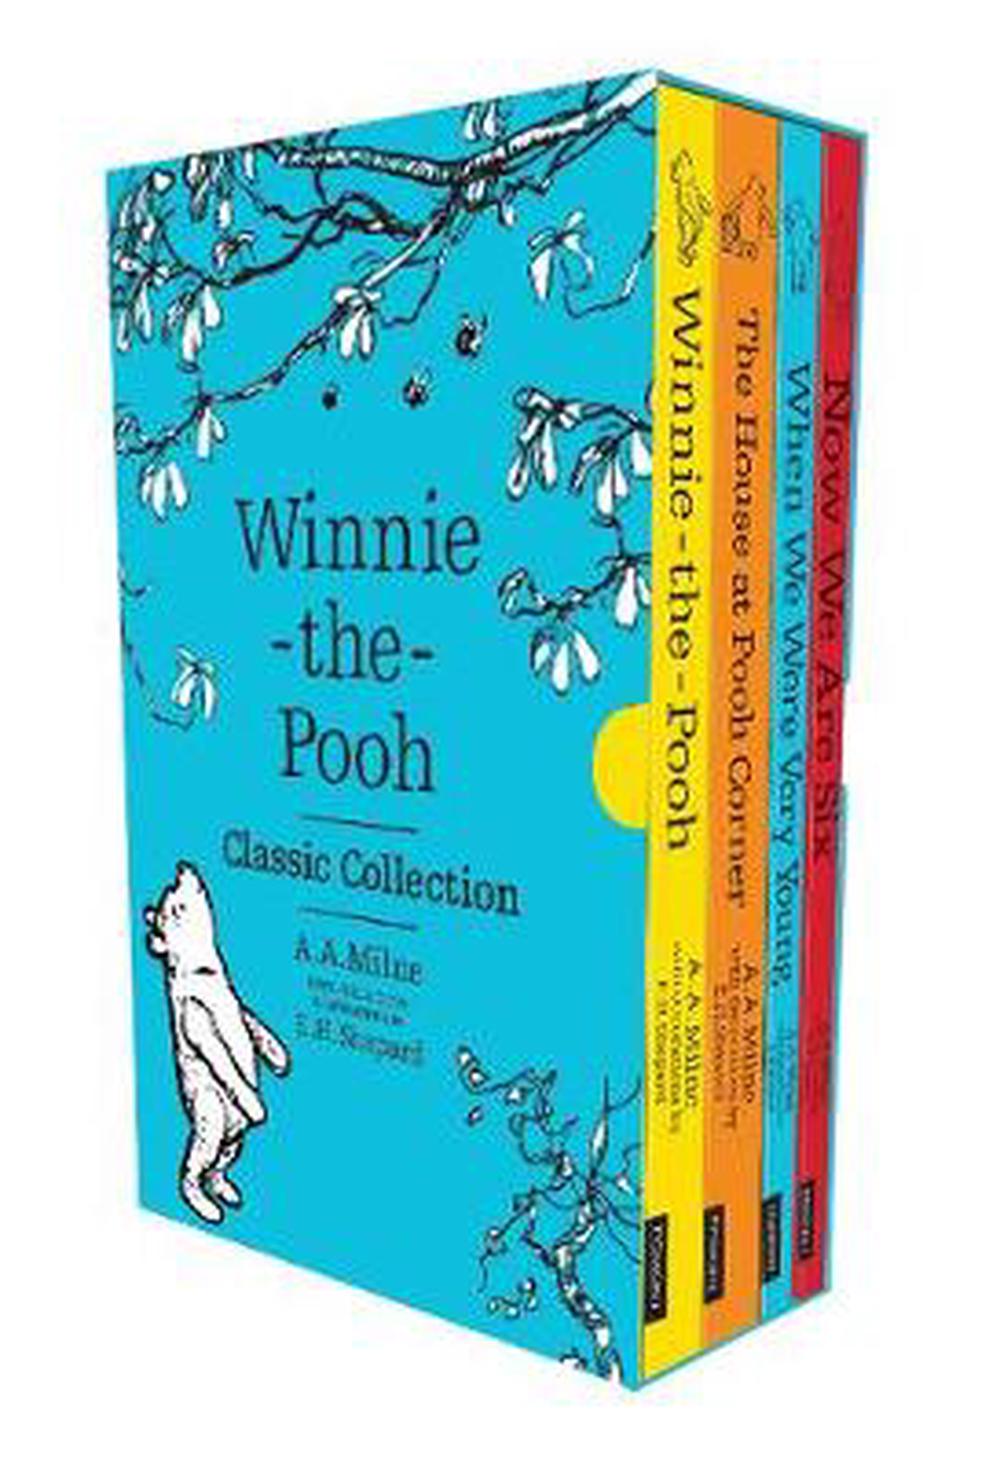 winnie the pooh classic book